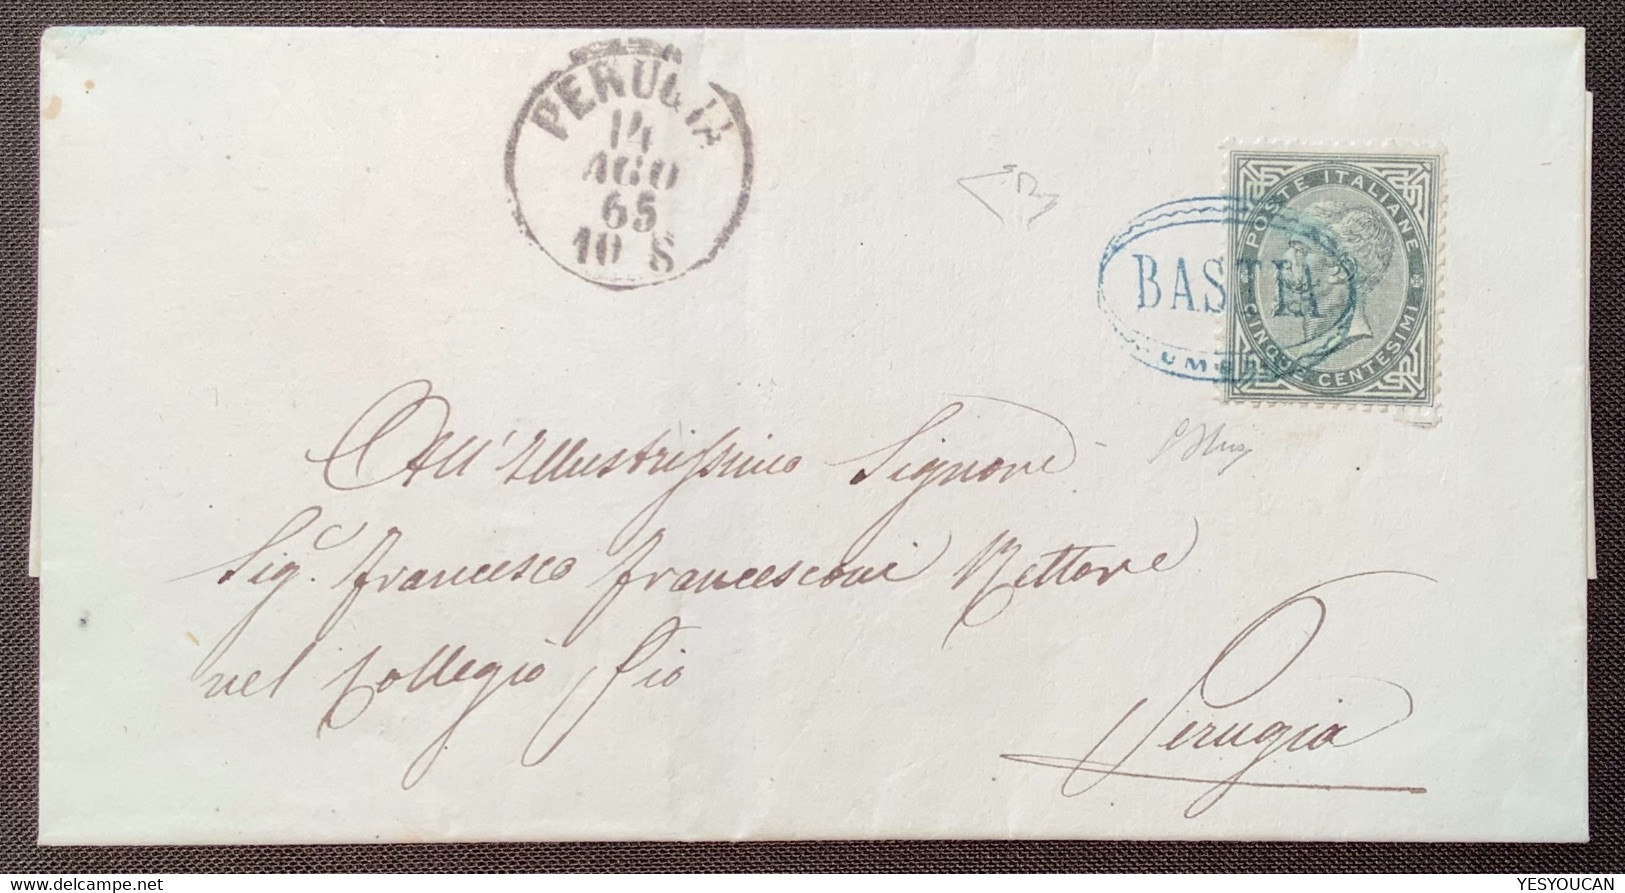 BASTIA UMBRIA RRR ! Lettera>PERUGIA1865 Regno D’ Italia 1863 L16 Certificato Enzo Diena (Italy Rare Cover Cert Italie - Storia Postale